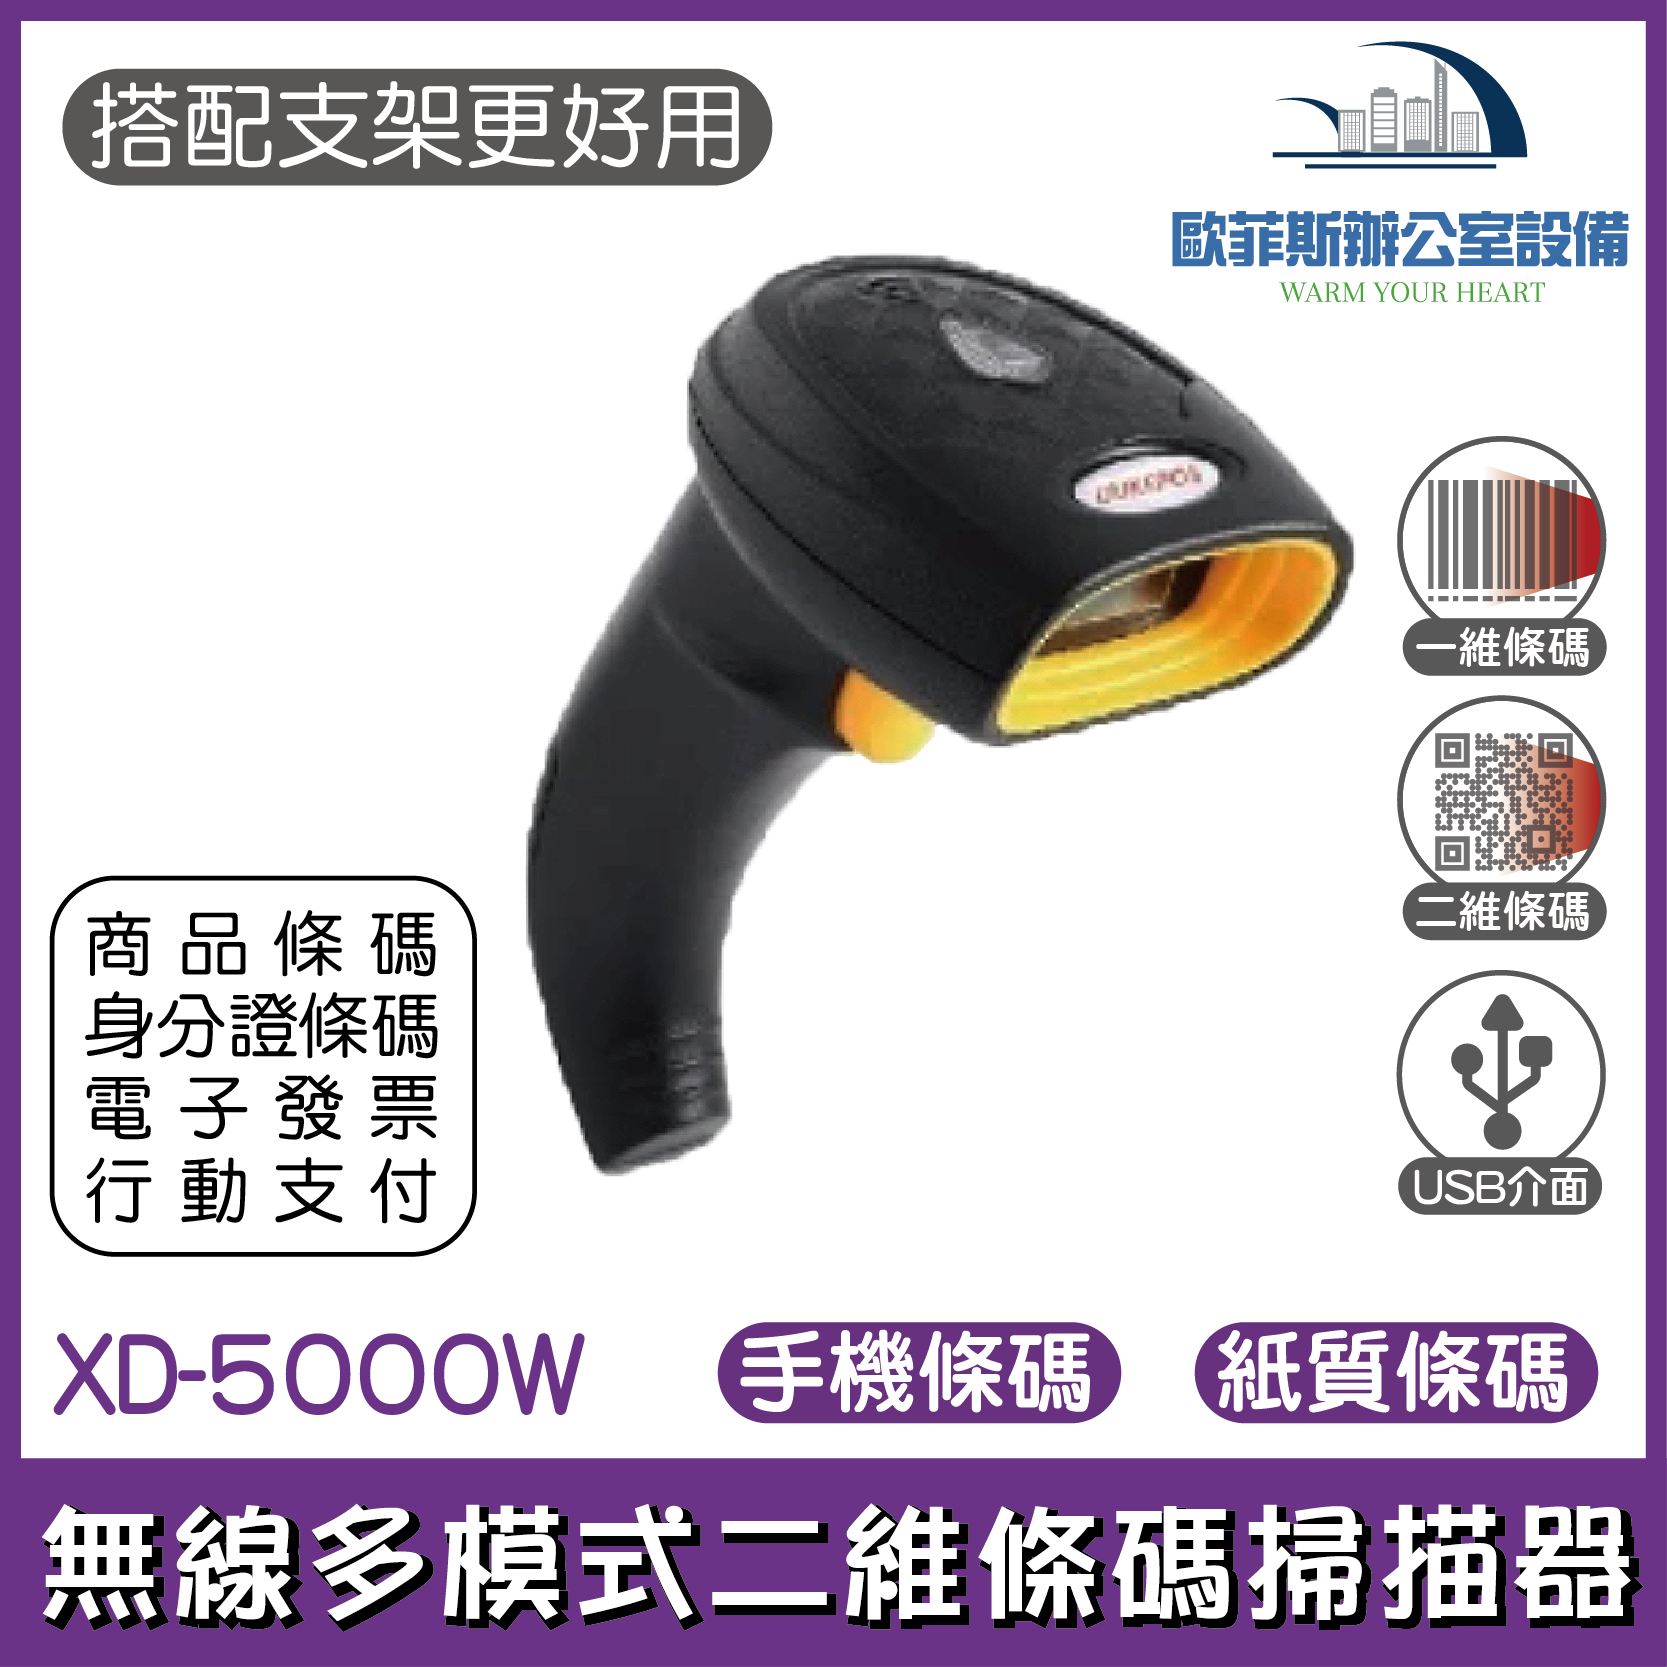 XD-5000W 台式風格無線多模式二維條碼掃描器 平台槍型兩用模式 可讀取發票QR CDOE顯示中文